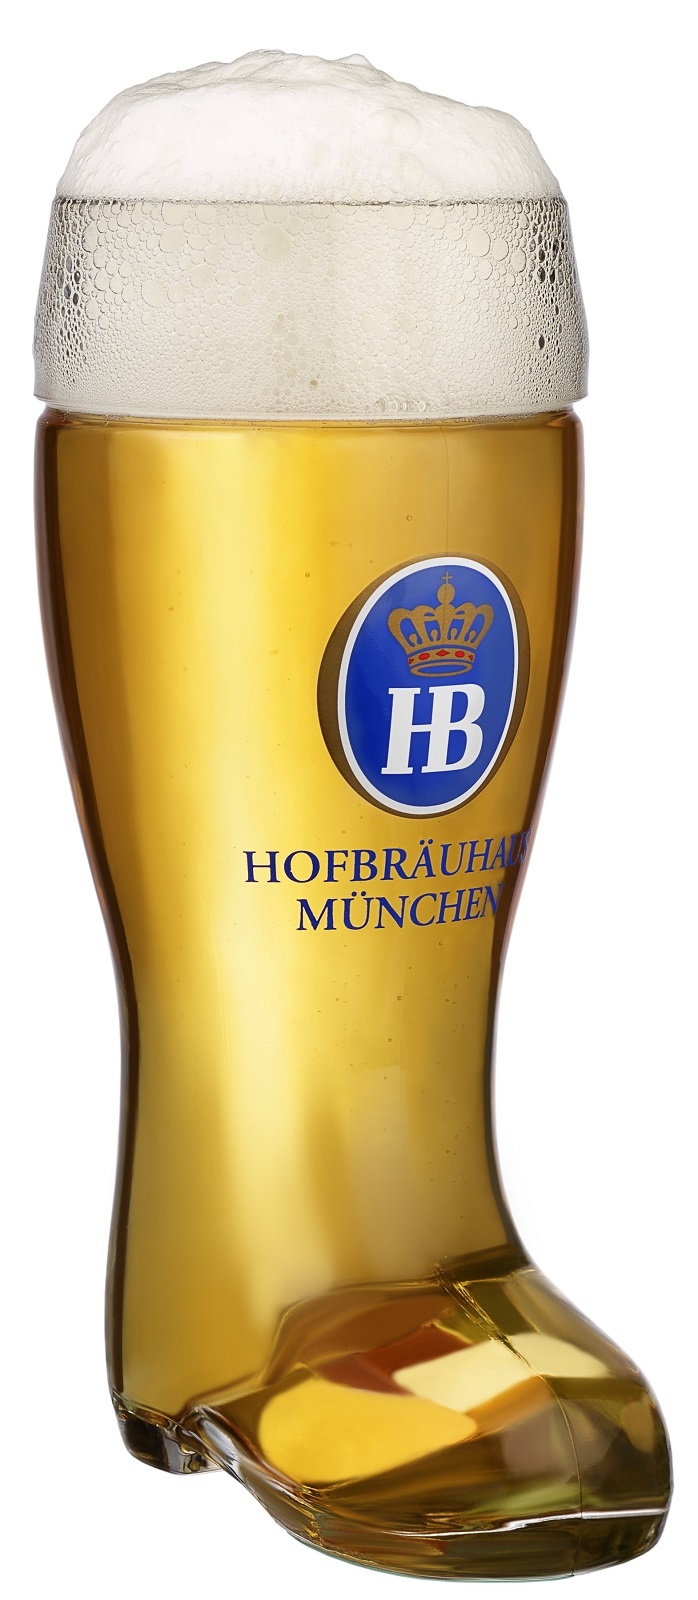 Hofbrauhaus Munchen Munich German Glass Beer Boot .5 L